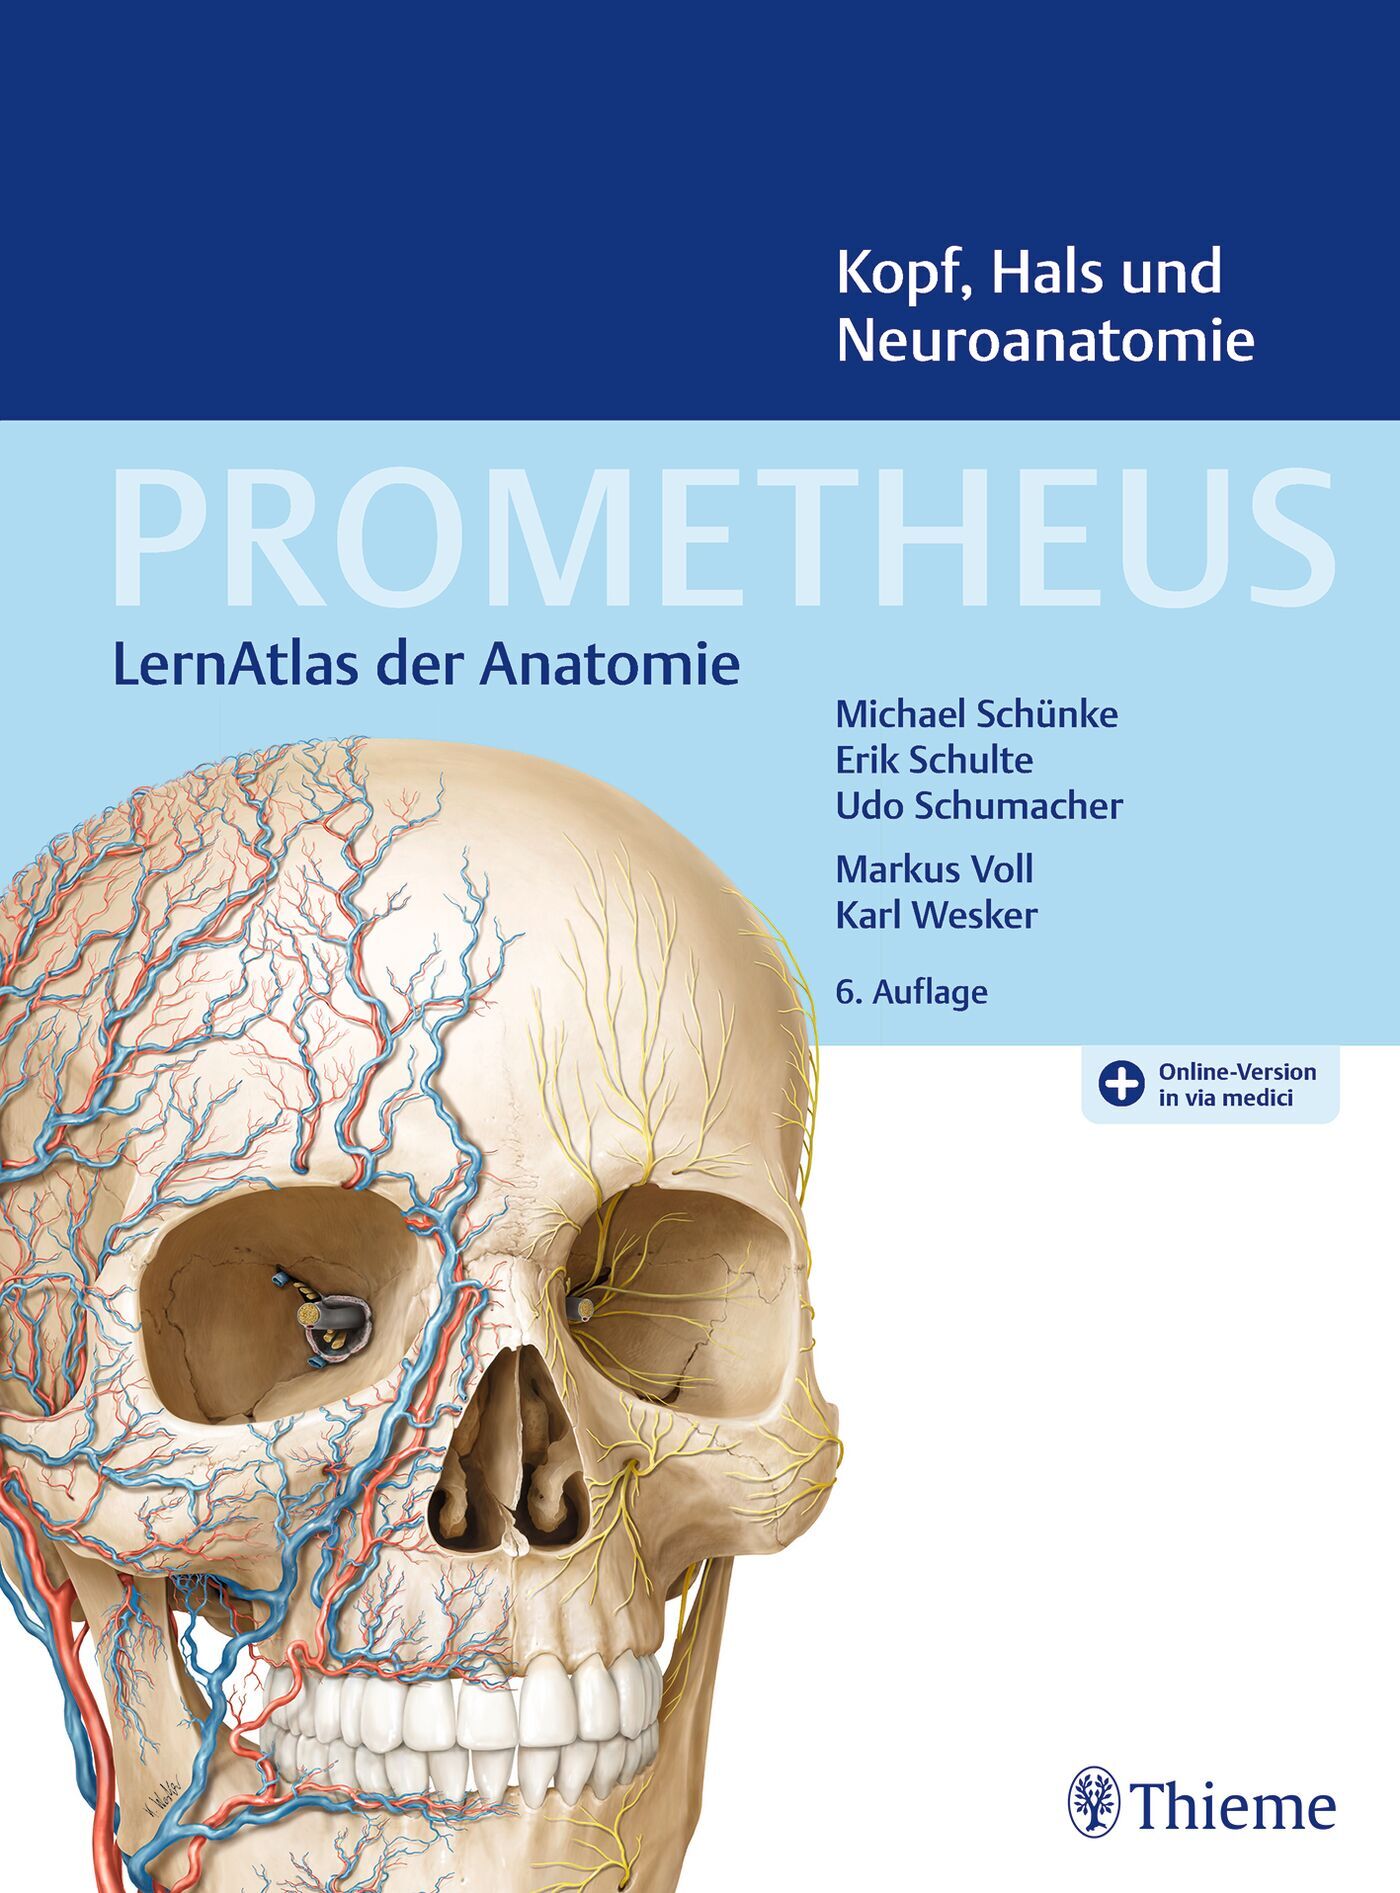 PROMETHEUS Kopf, Hals und Neuroanatomie, 9783132444218